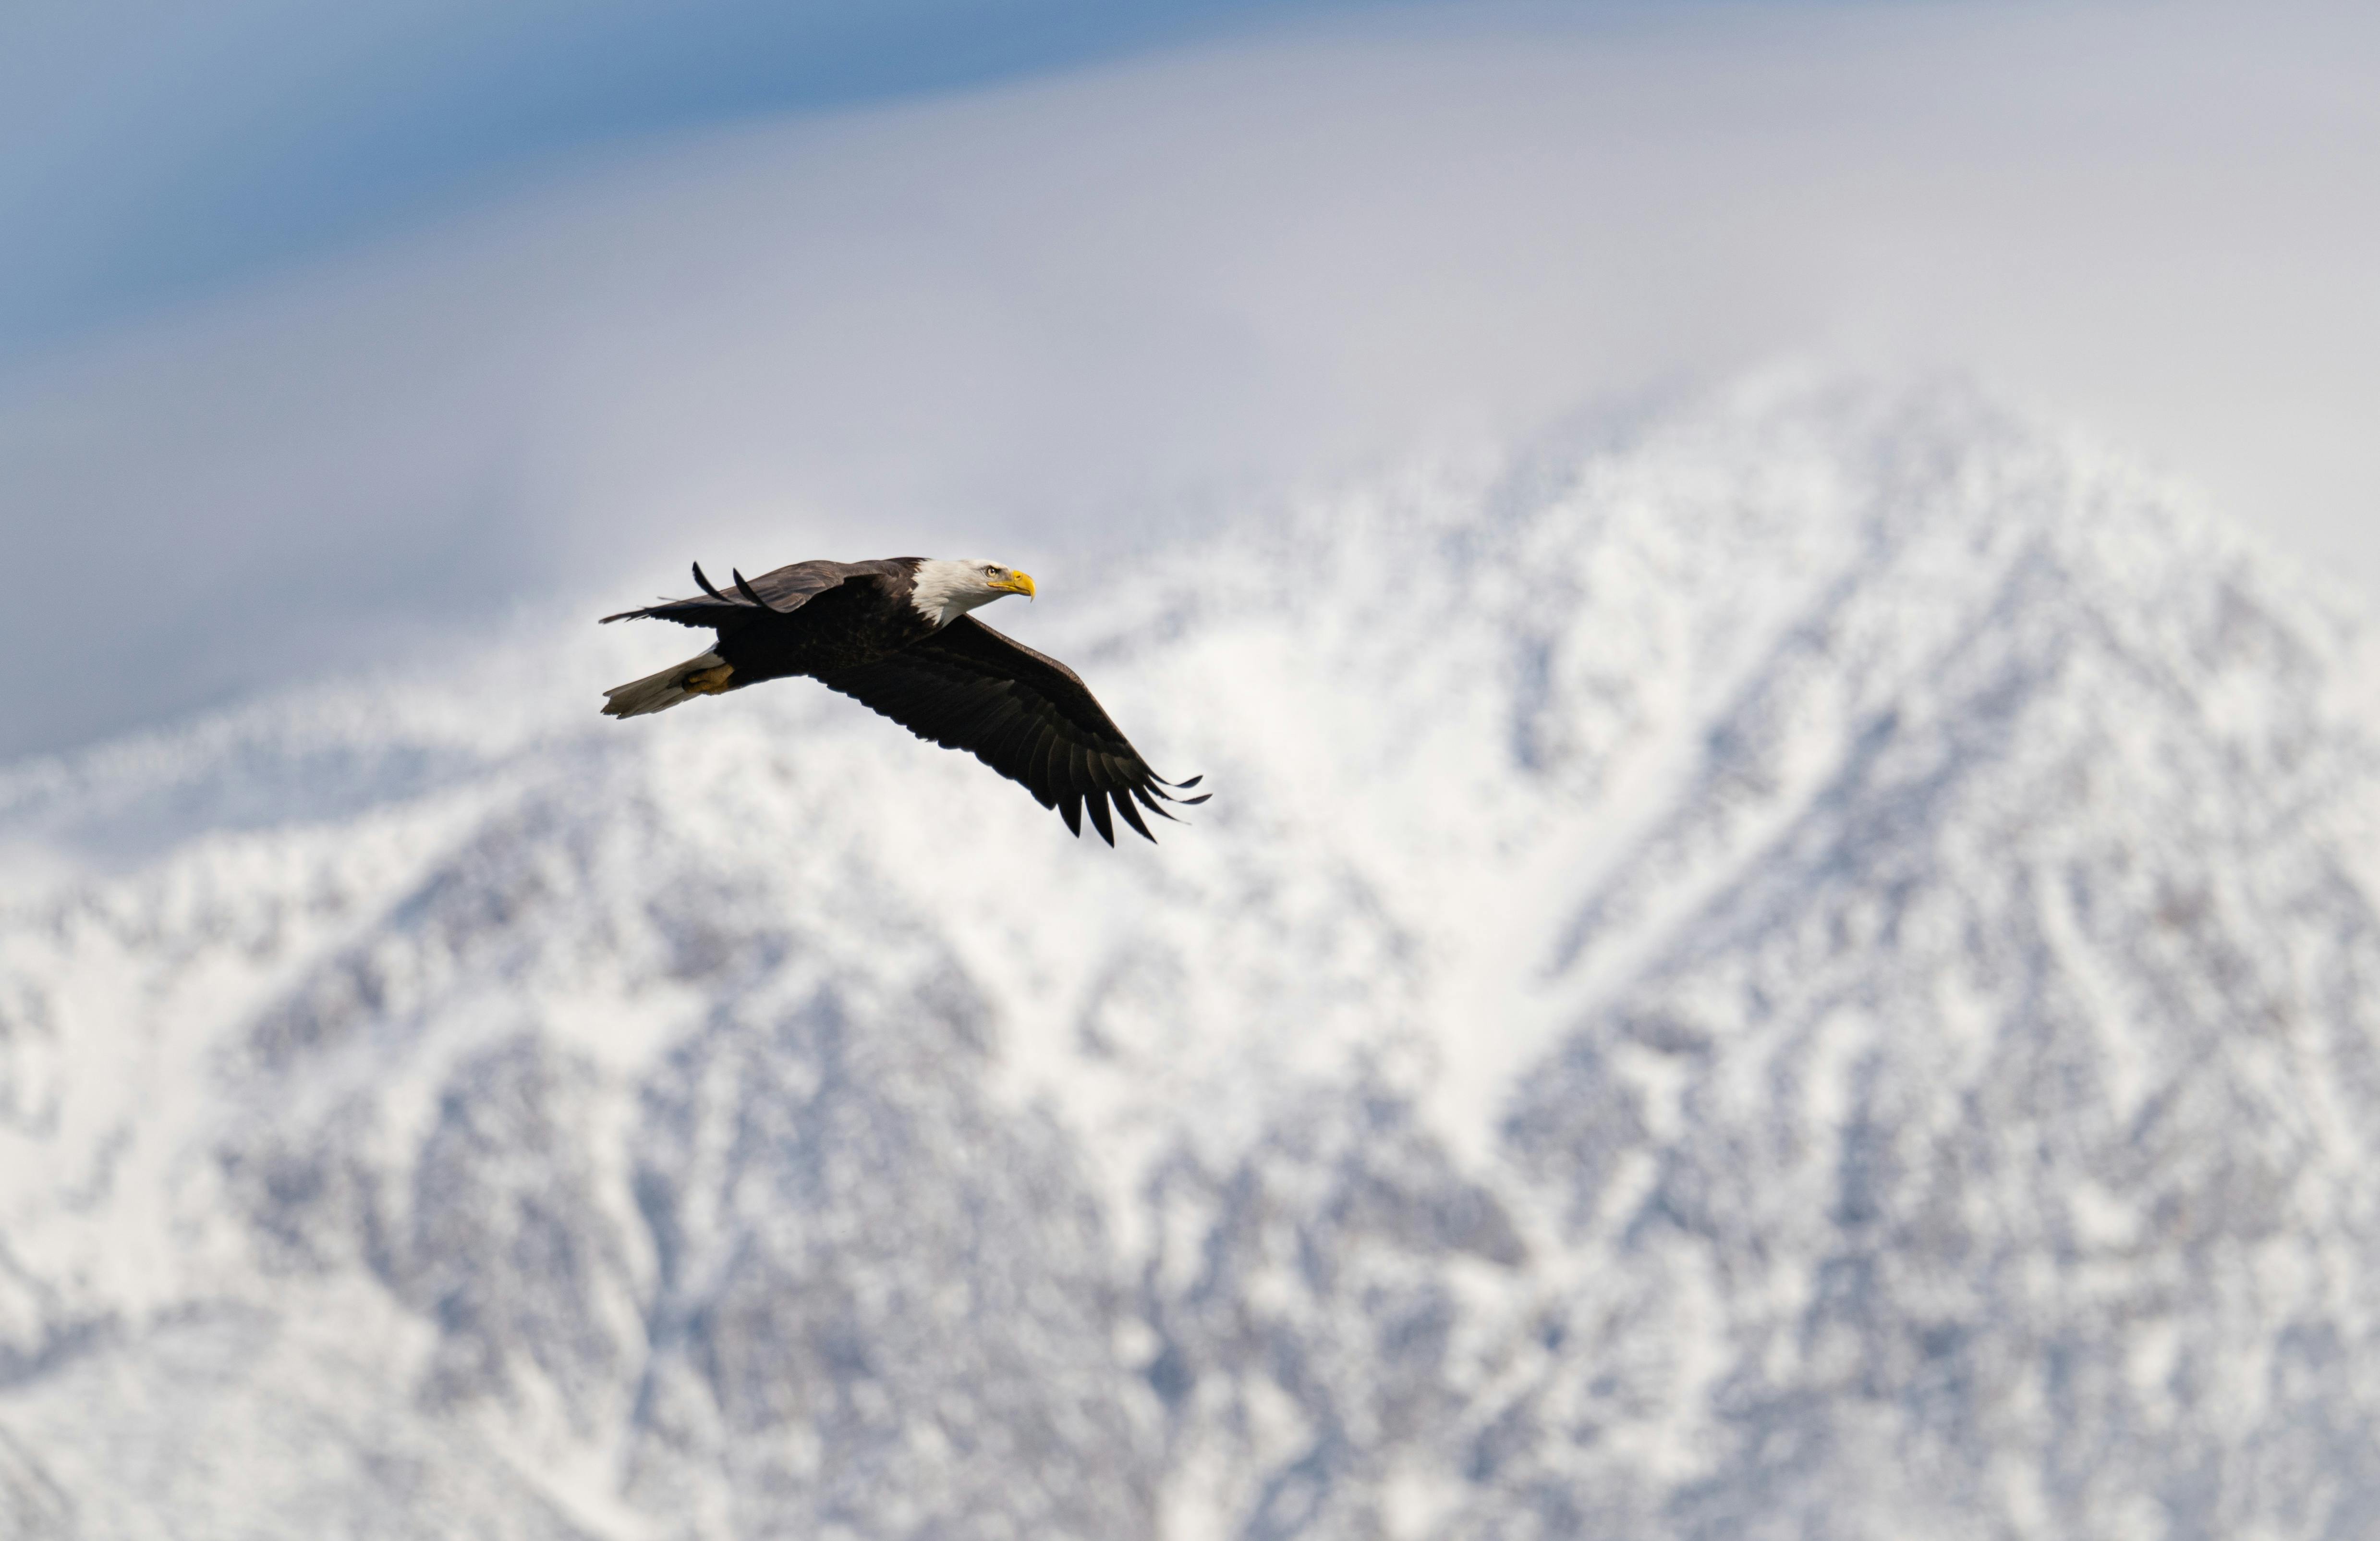 + Fotos y Imágenes de Águila volando Gratis · Banco de Fotos Gratis